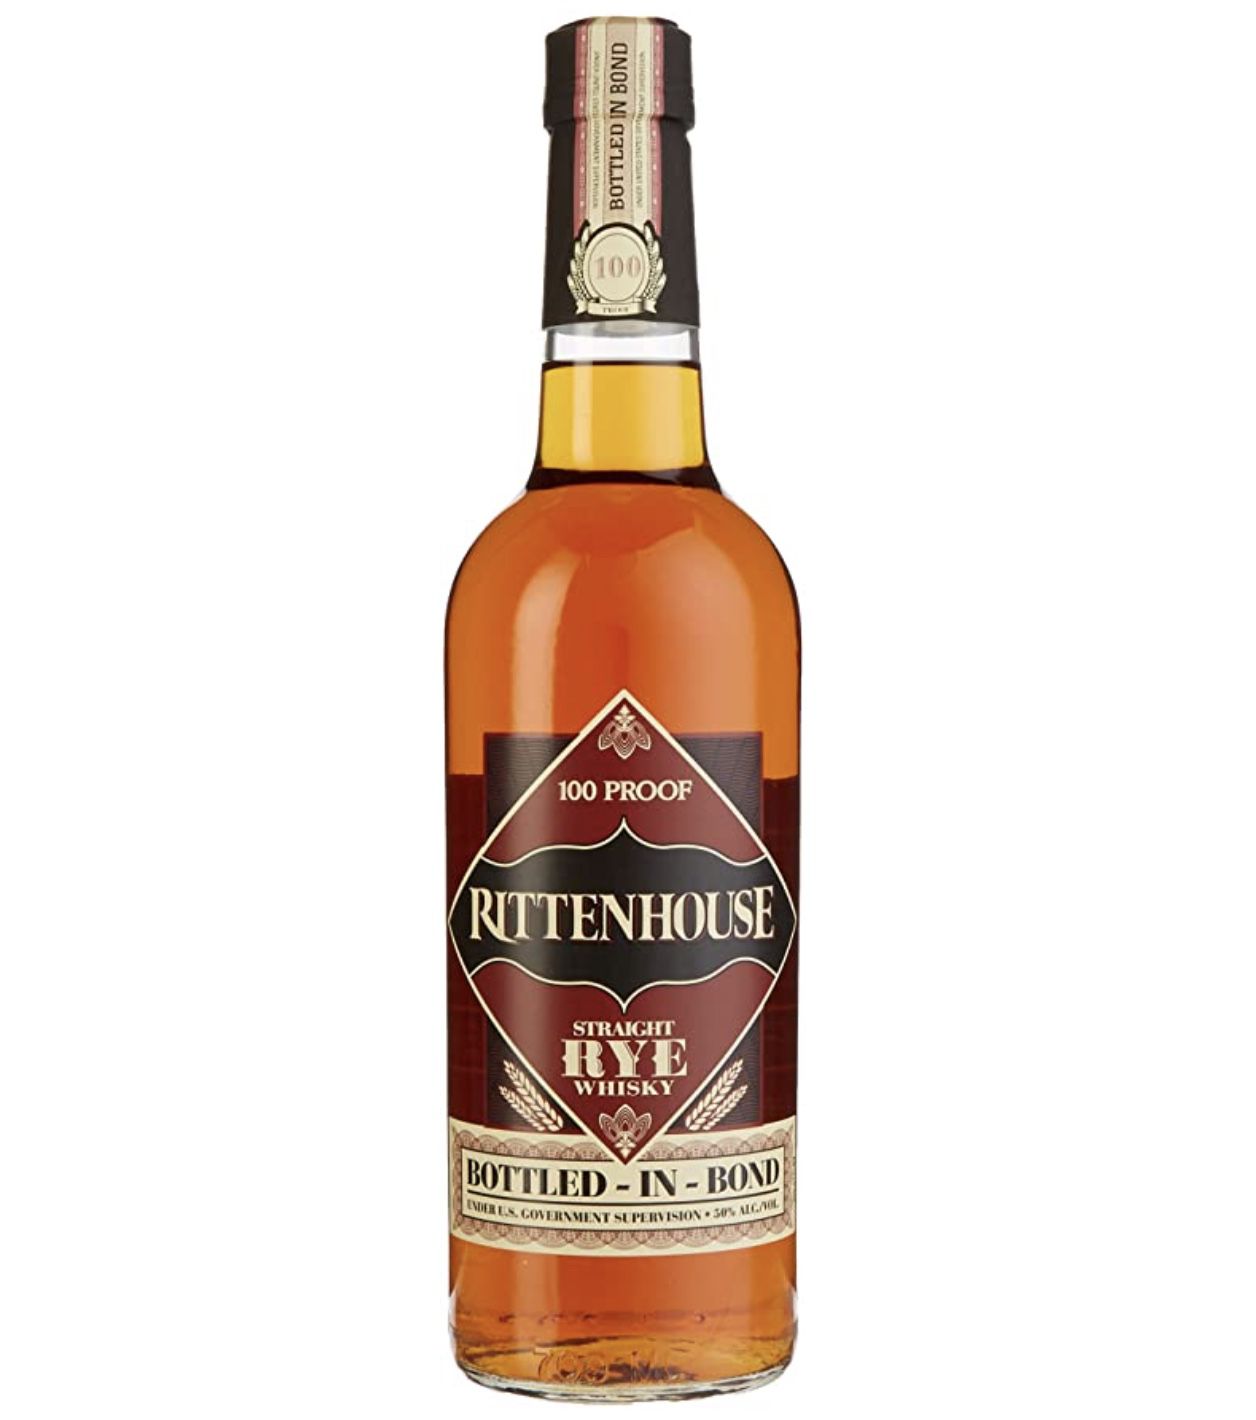 Rittenhouse Straight Rye Whisky 100 Proof Bottled in Bond ab 23,99€ (statt 30€)   Sparabo